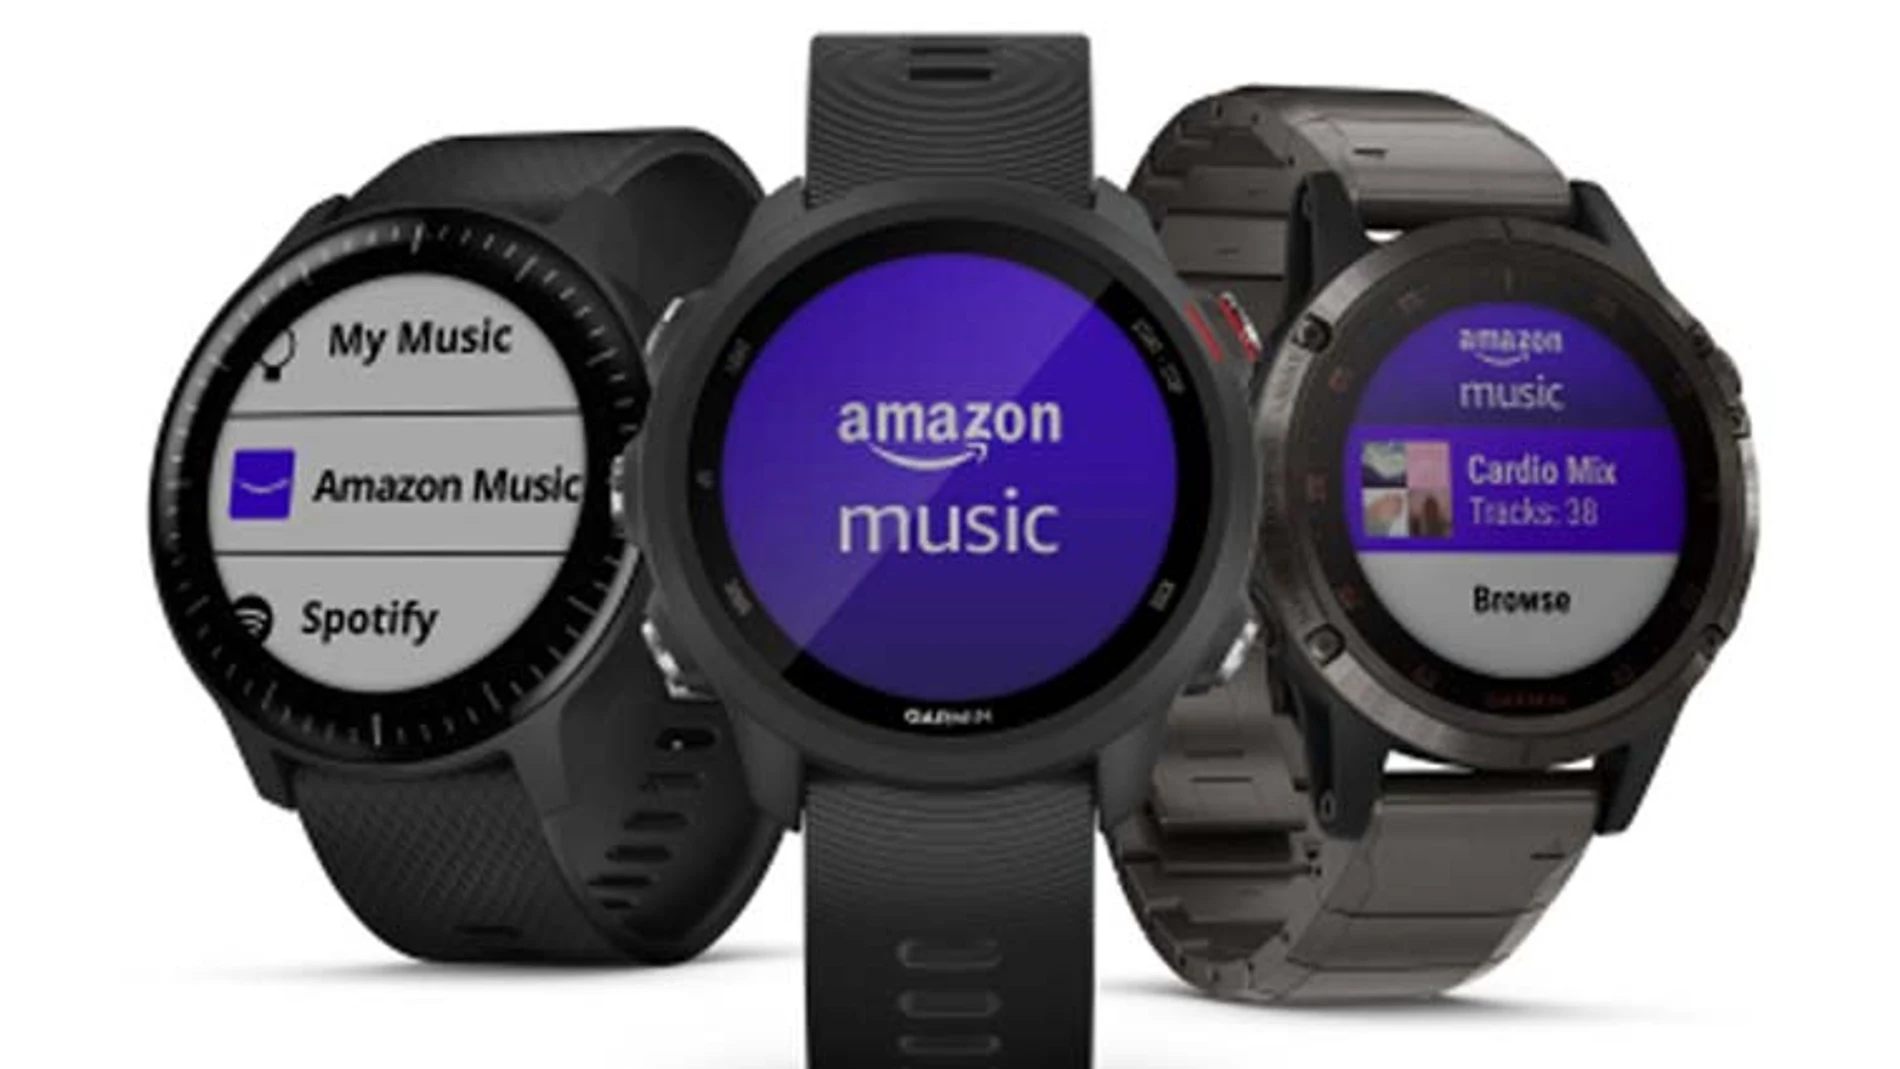 Los relojes inteligentes más modernos de Garmin pueden utilizar los servicios de Amazon Music para acceder a millones de canciones.